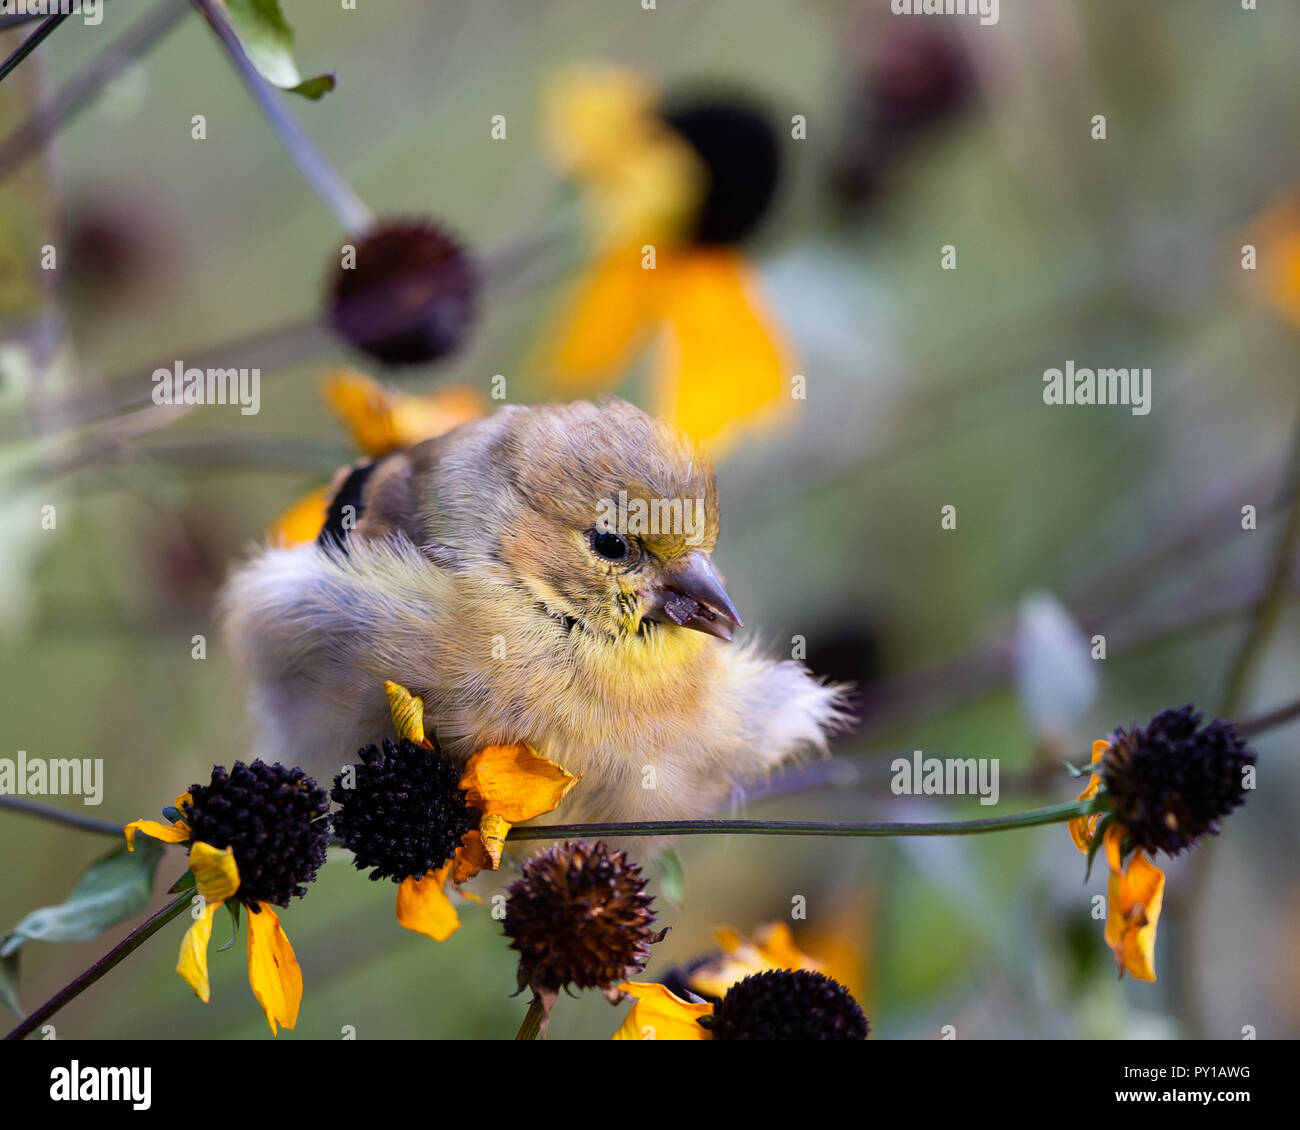 Eine amerikanische Stieglitz, Spinus tristis, Fütterung auf gelben Kegel Blumen in einem Garten in Spekulant, NY, USA, alle Fluffed gegen die Kälte. Stockfoto